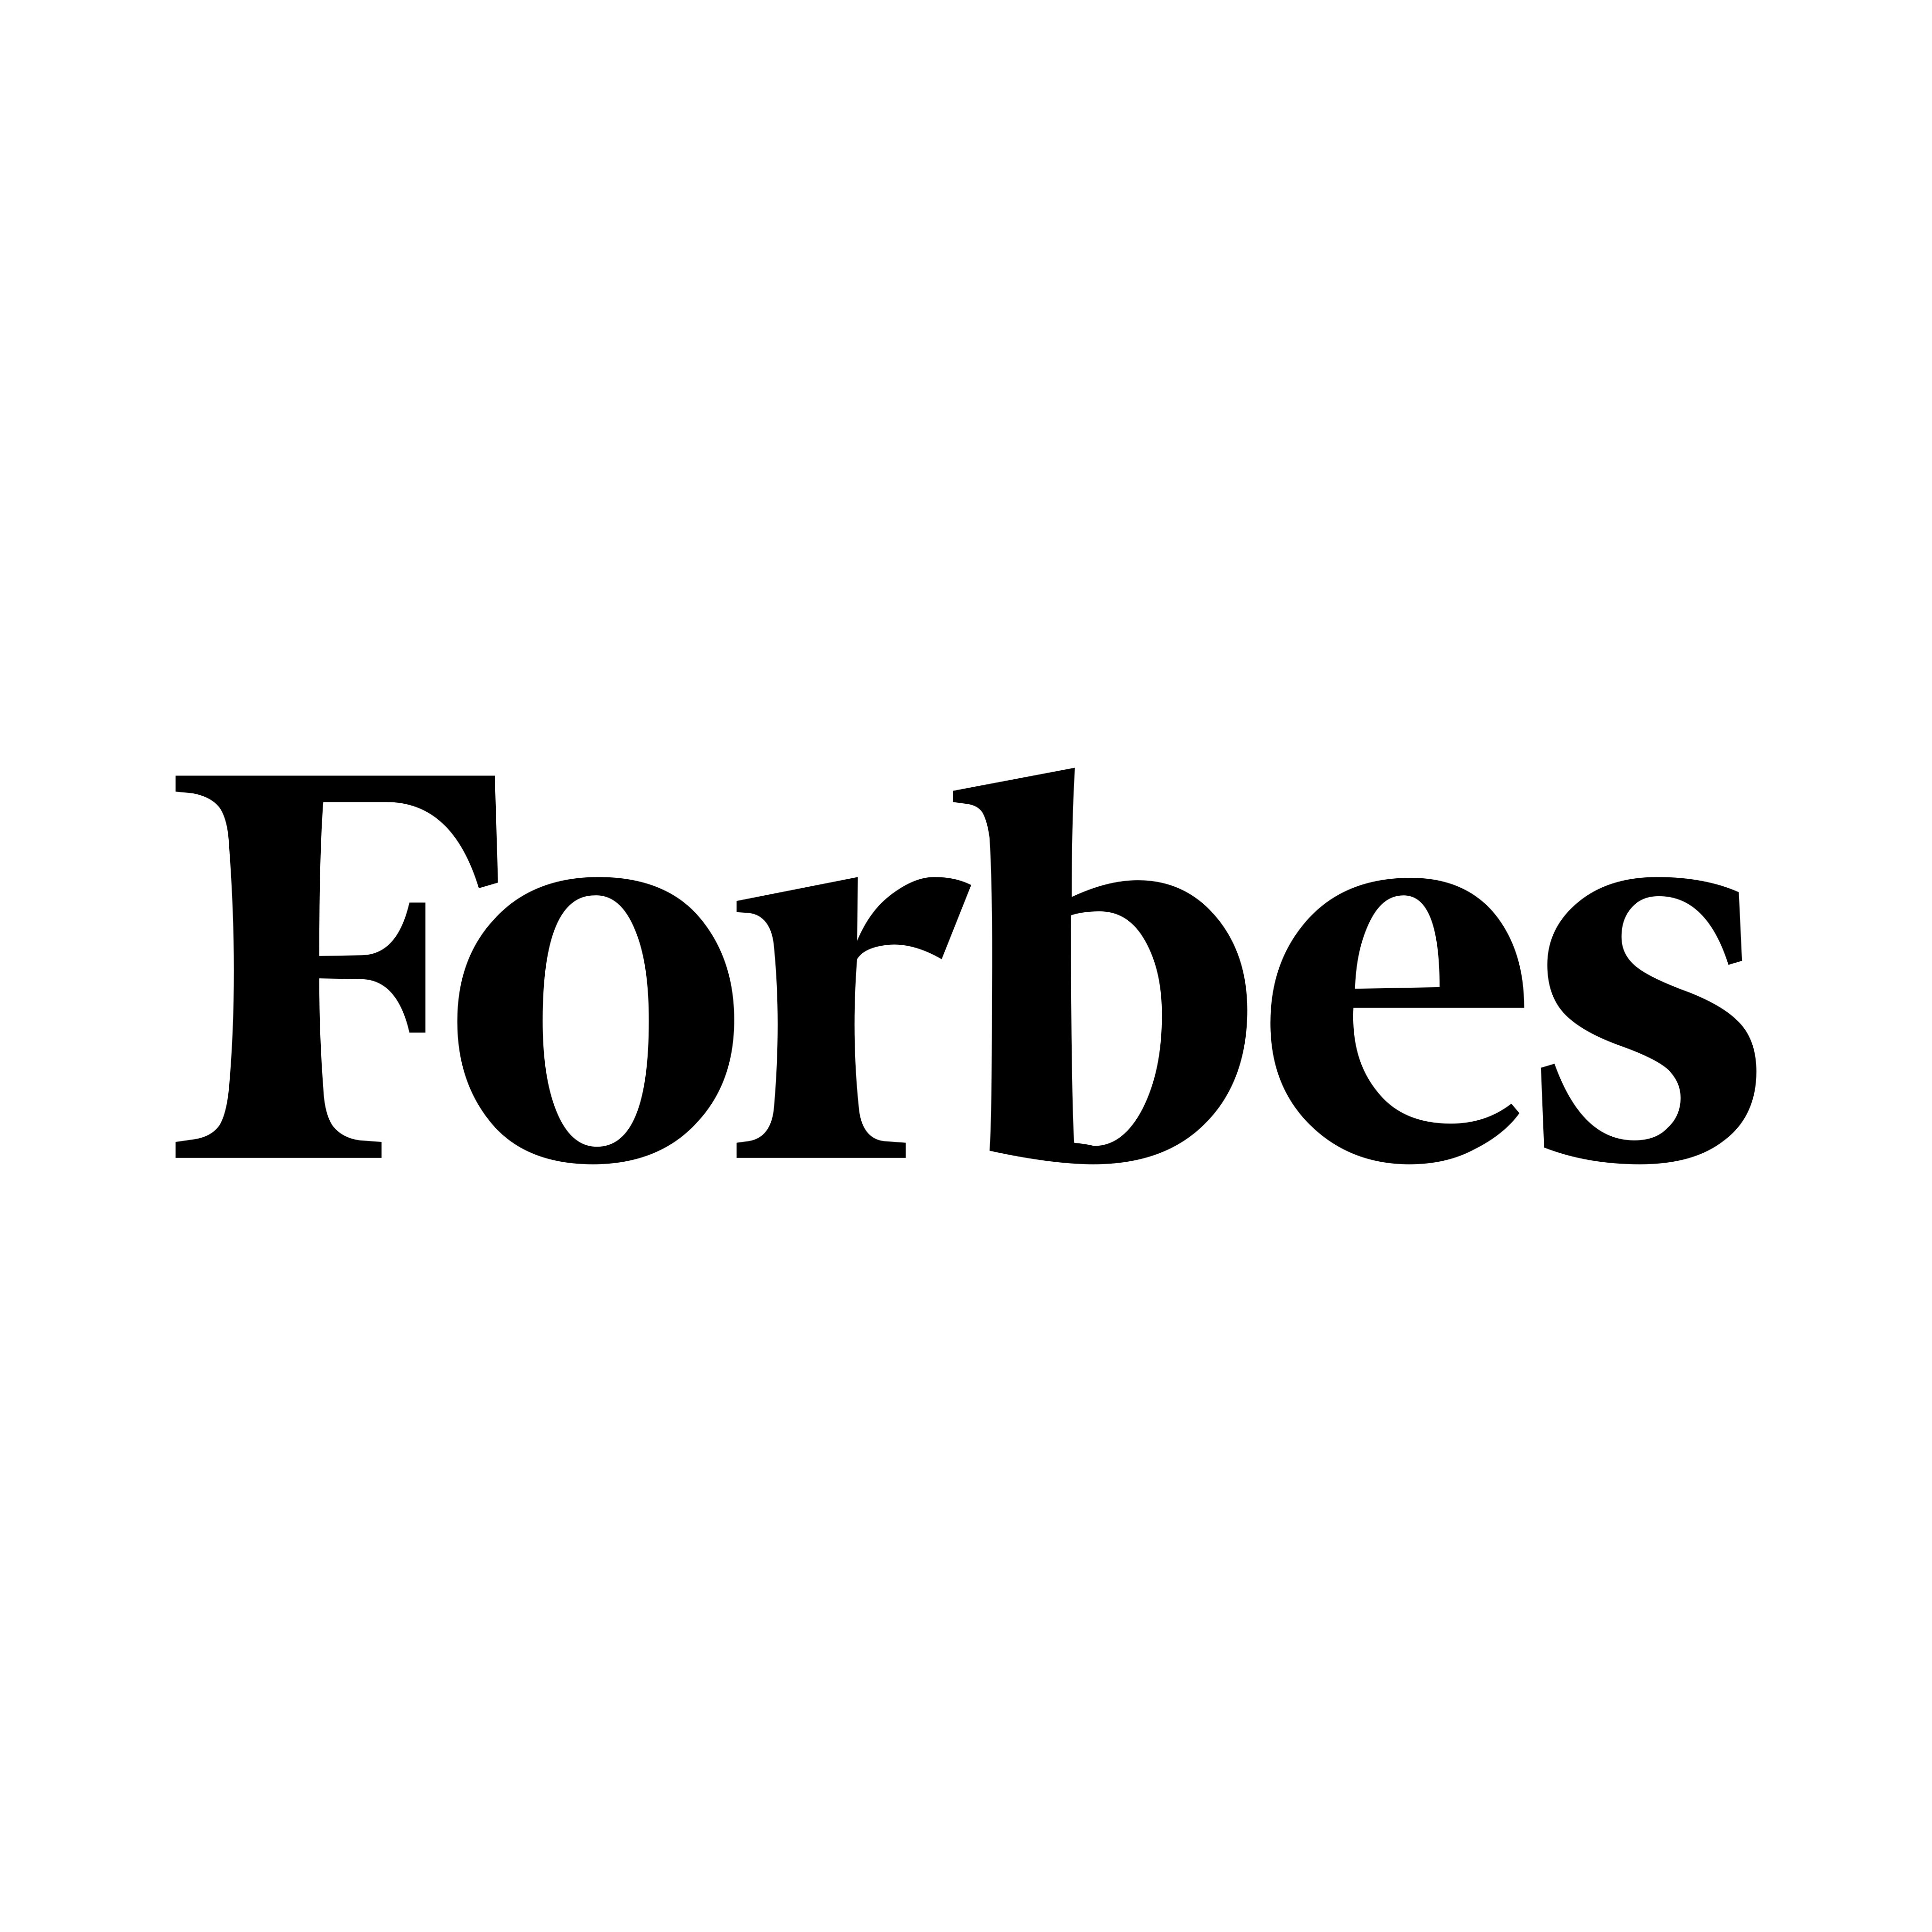 Logotipo de Forbes - PNG y Vector - Descargar logotipo